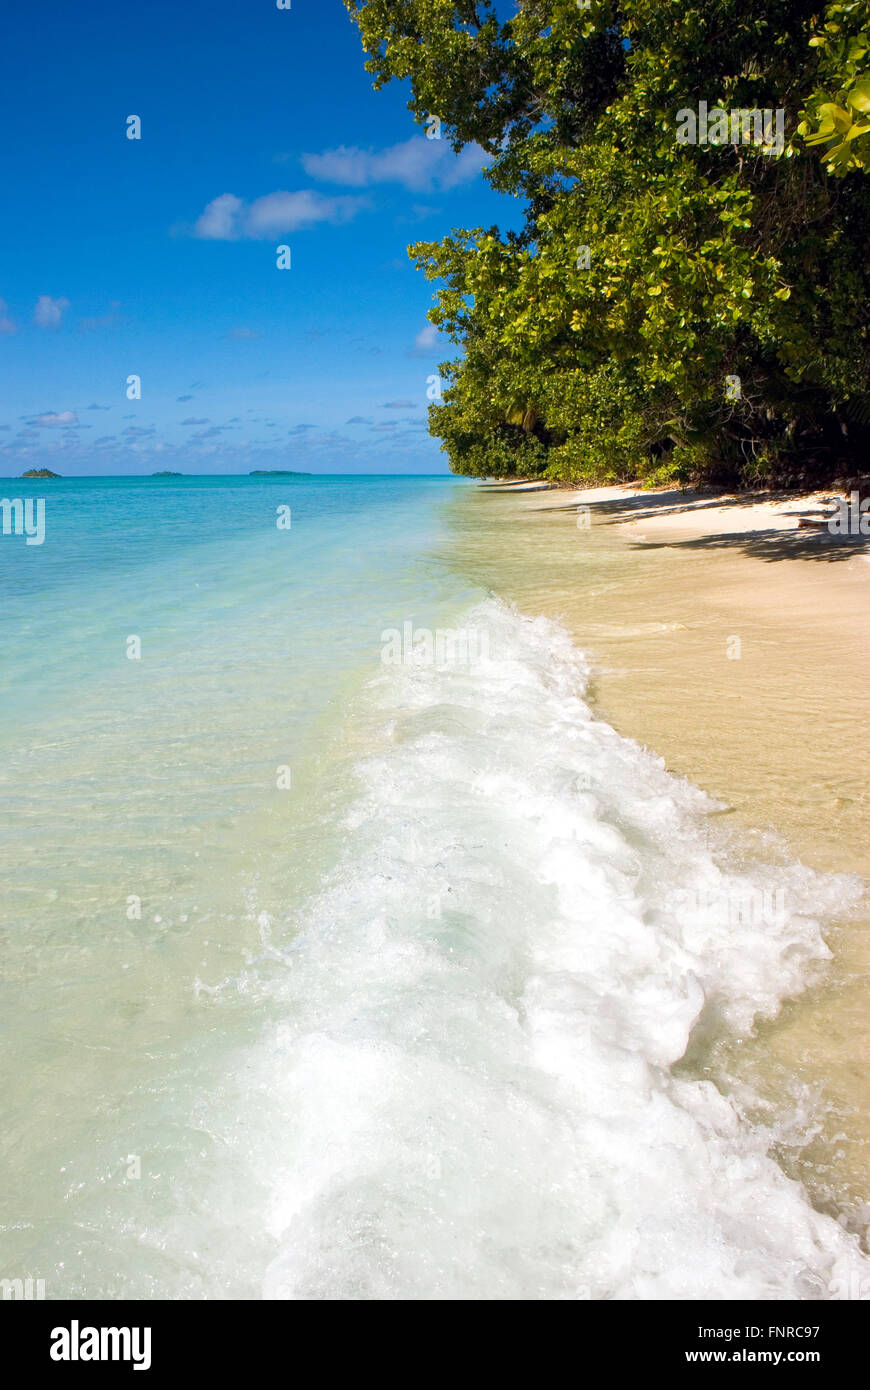 L'image d'une plage sur une île tropicale Banque D'Images